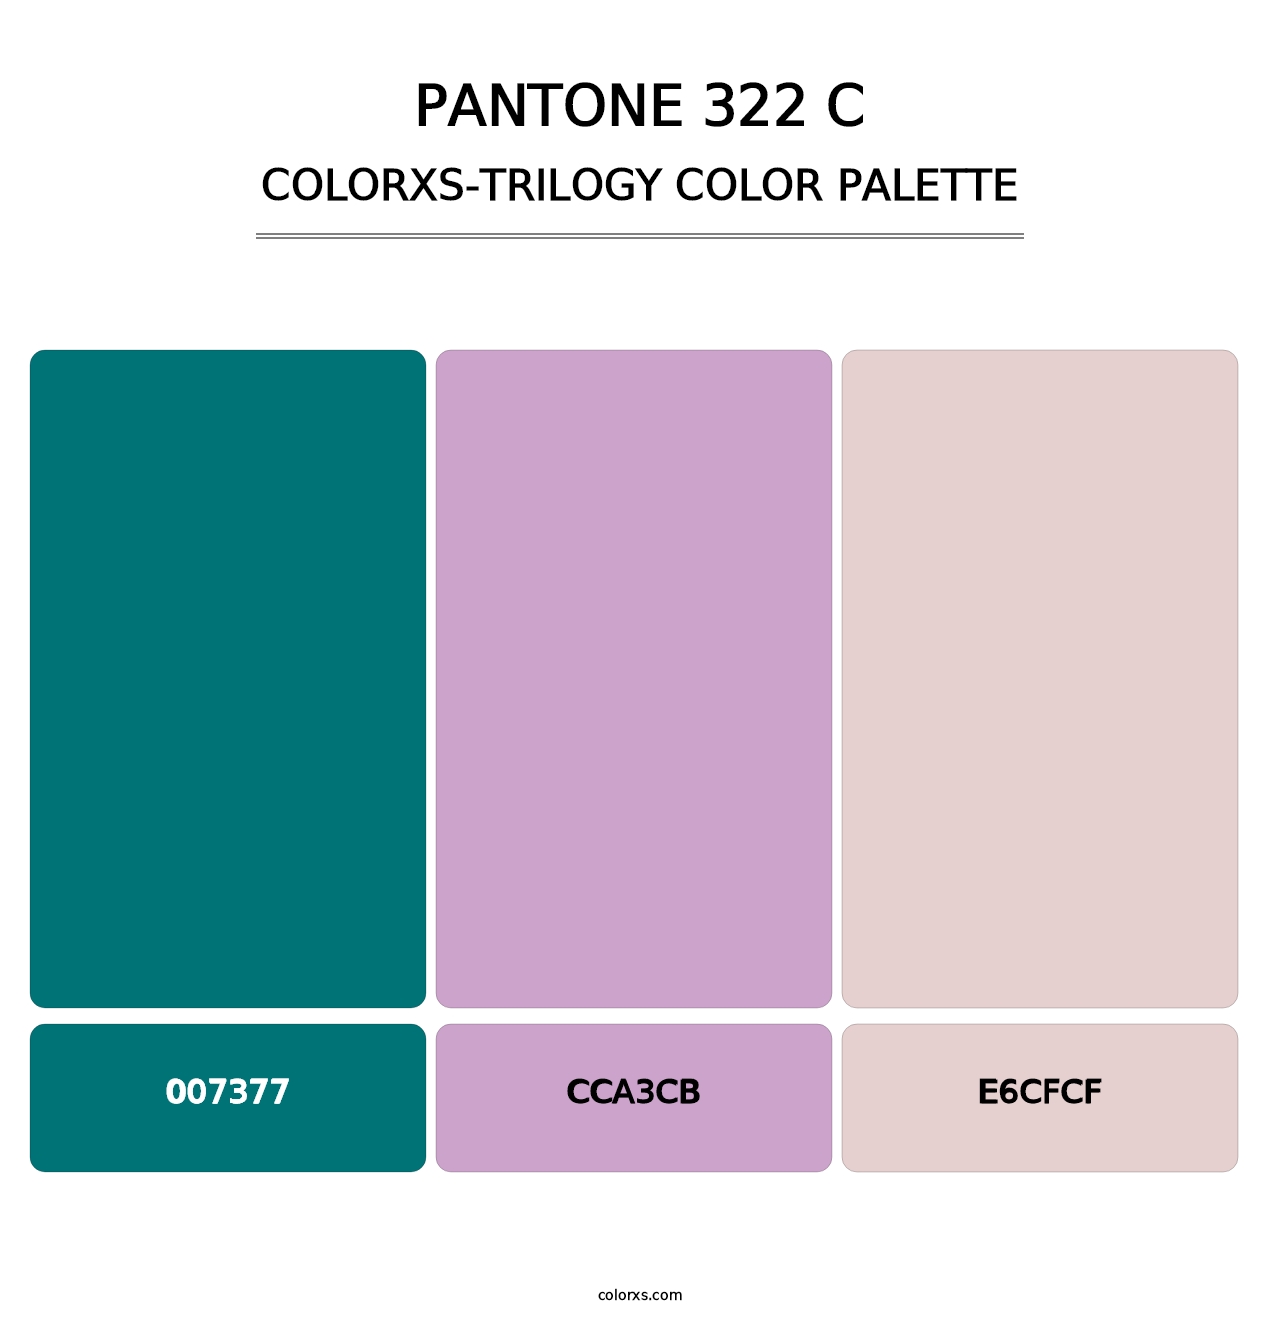 PANTONE 322 C - Colorxs Trilogy Palette